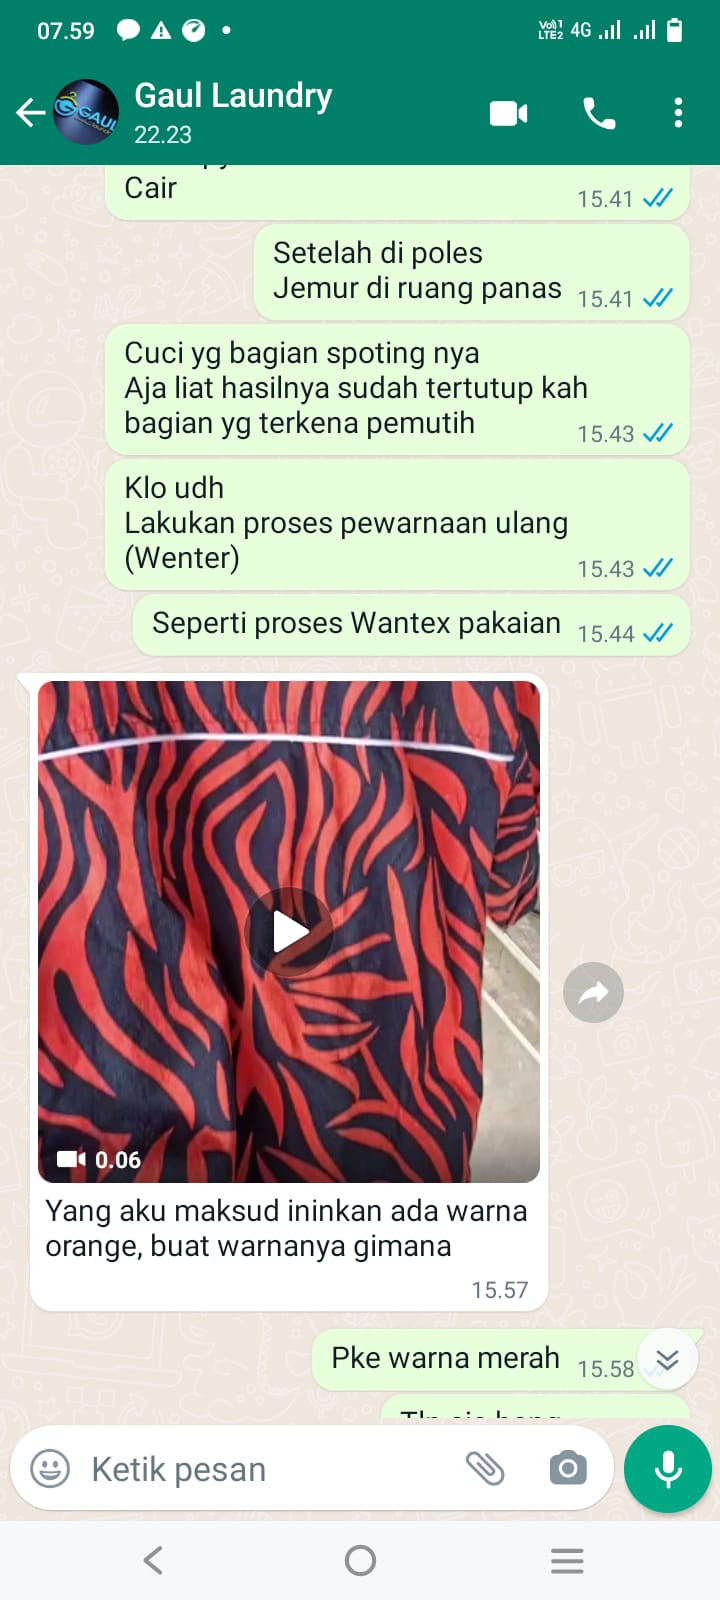 Jasa Wantex Baju Dan Celana Murah  Surabaya